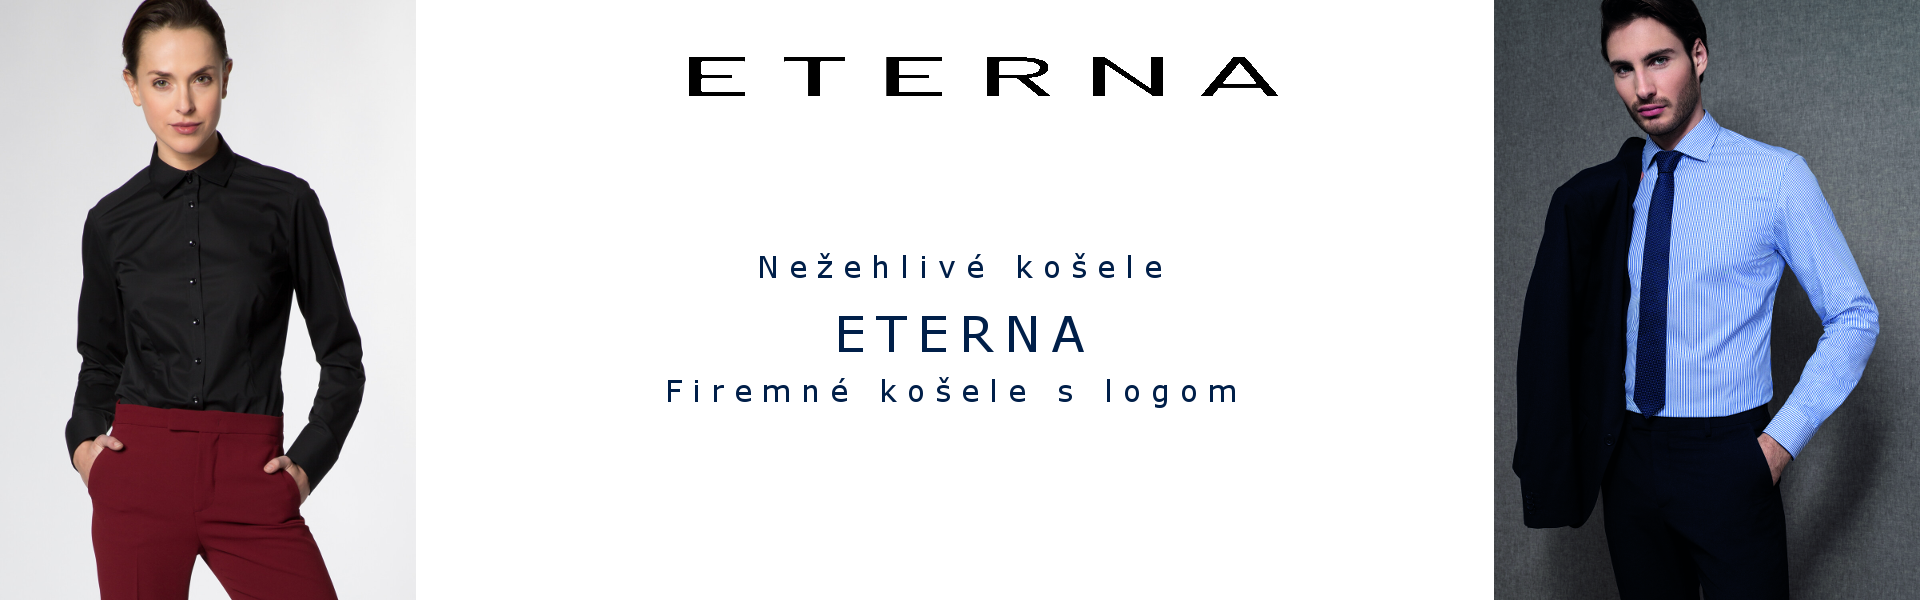 Firemné košele ETERNA s logom pre obchodníkov a menedžment